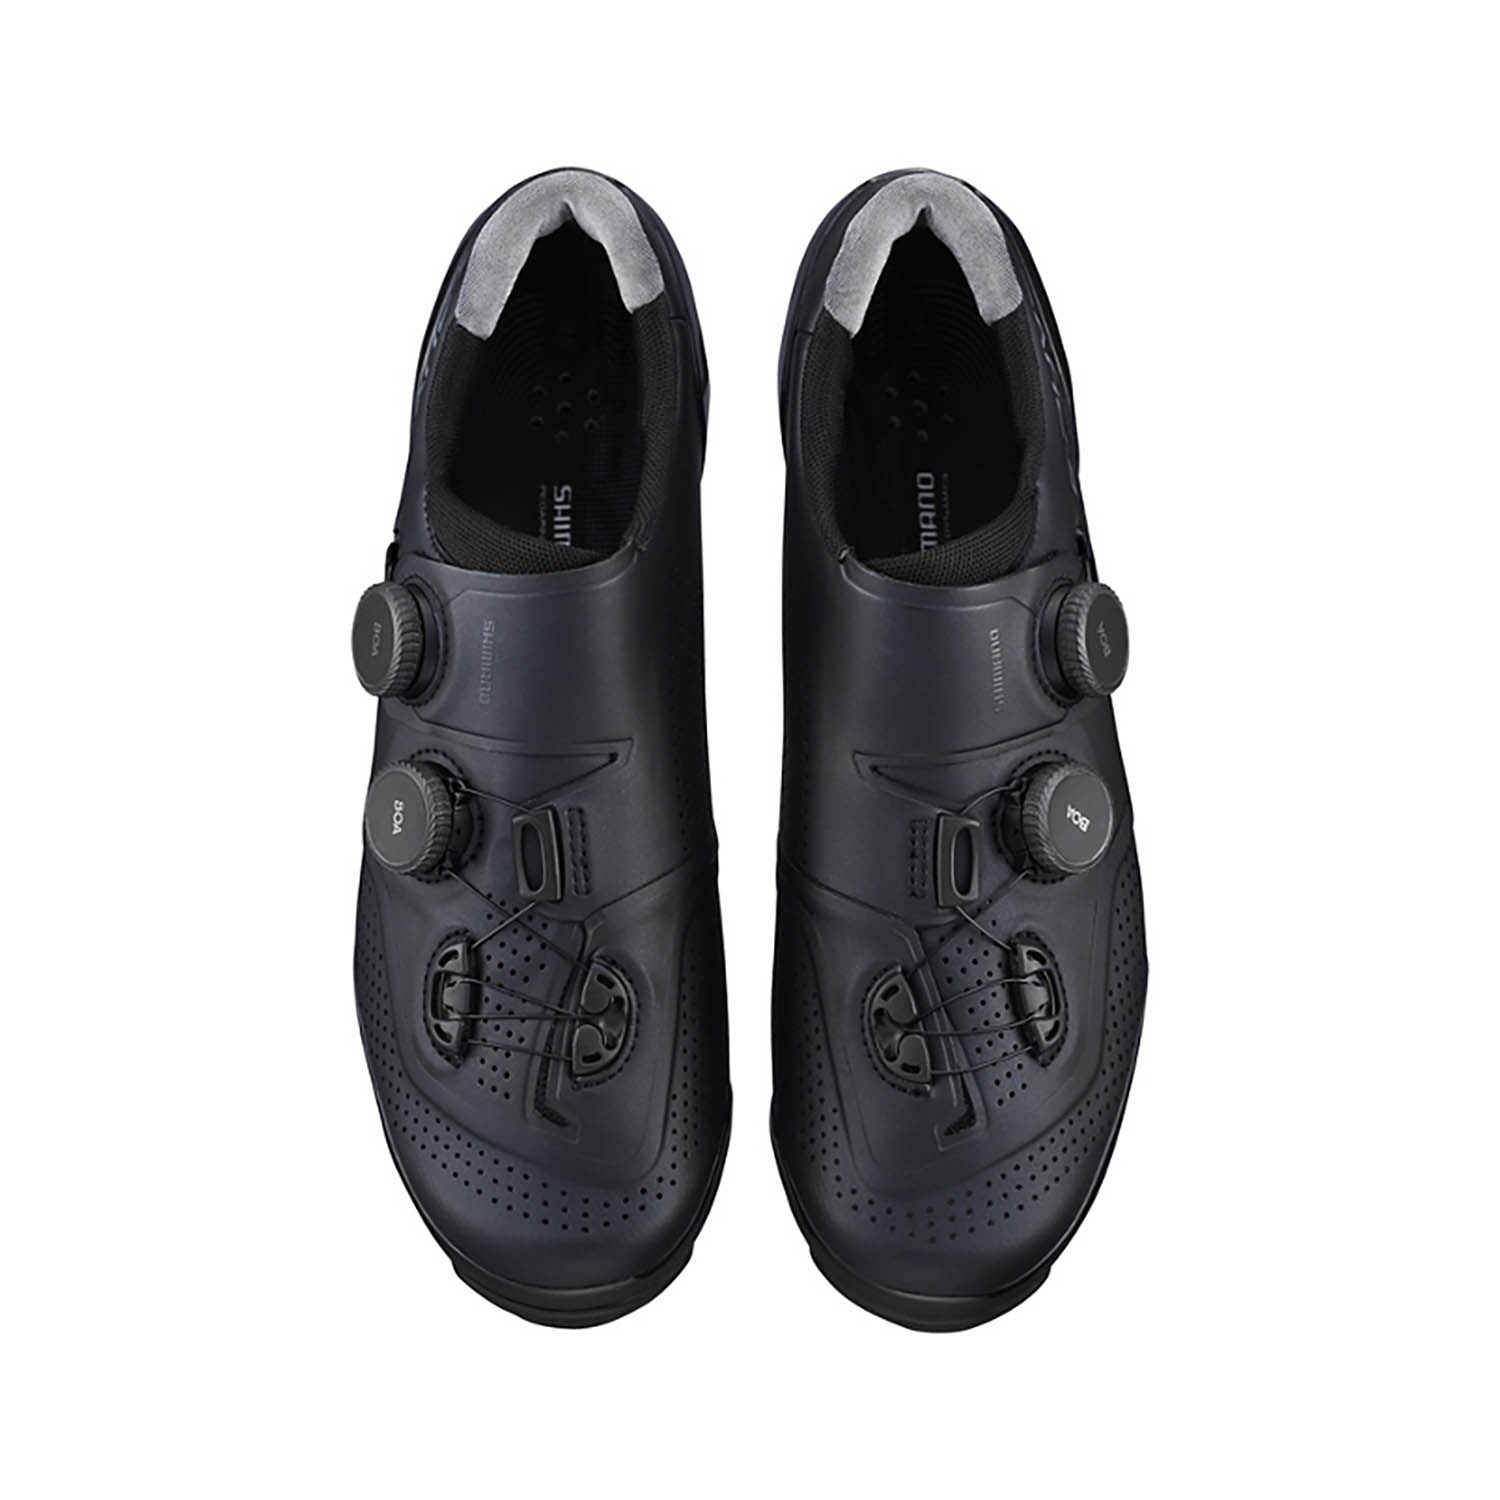 Shimano S-phyre XC902 MTB schoenen